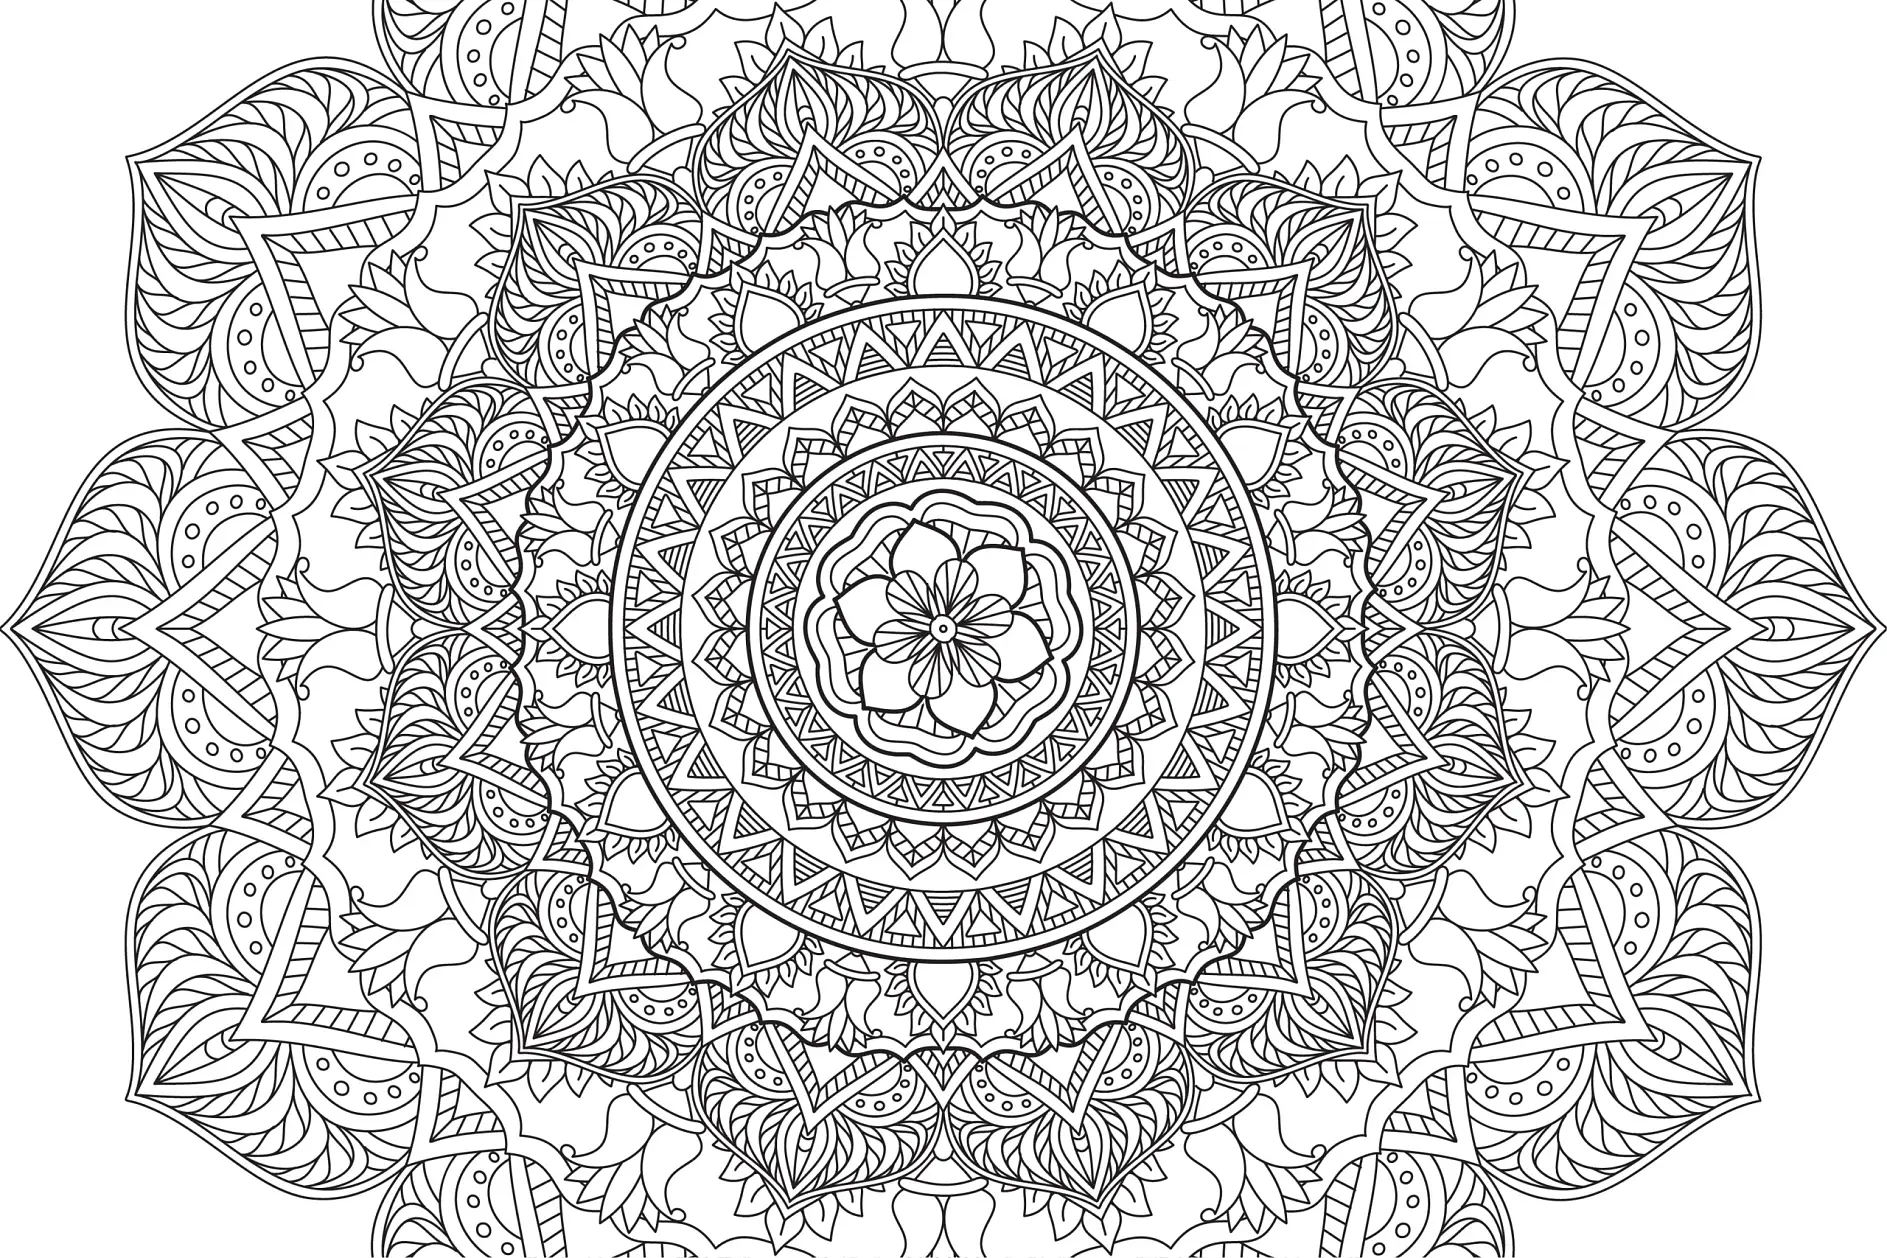 Ausmalbild Mandala mit komplexen Blumenmustern und detaillierten Blättern